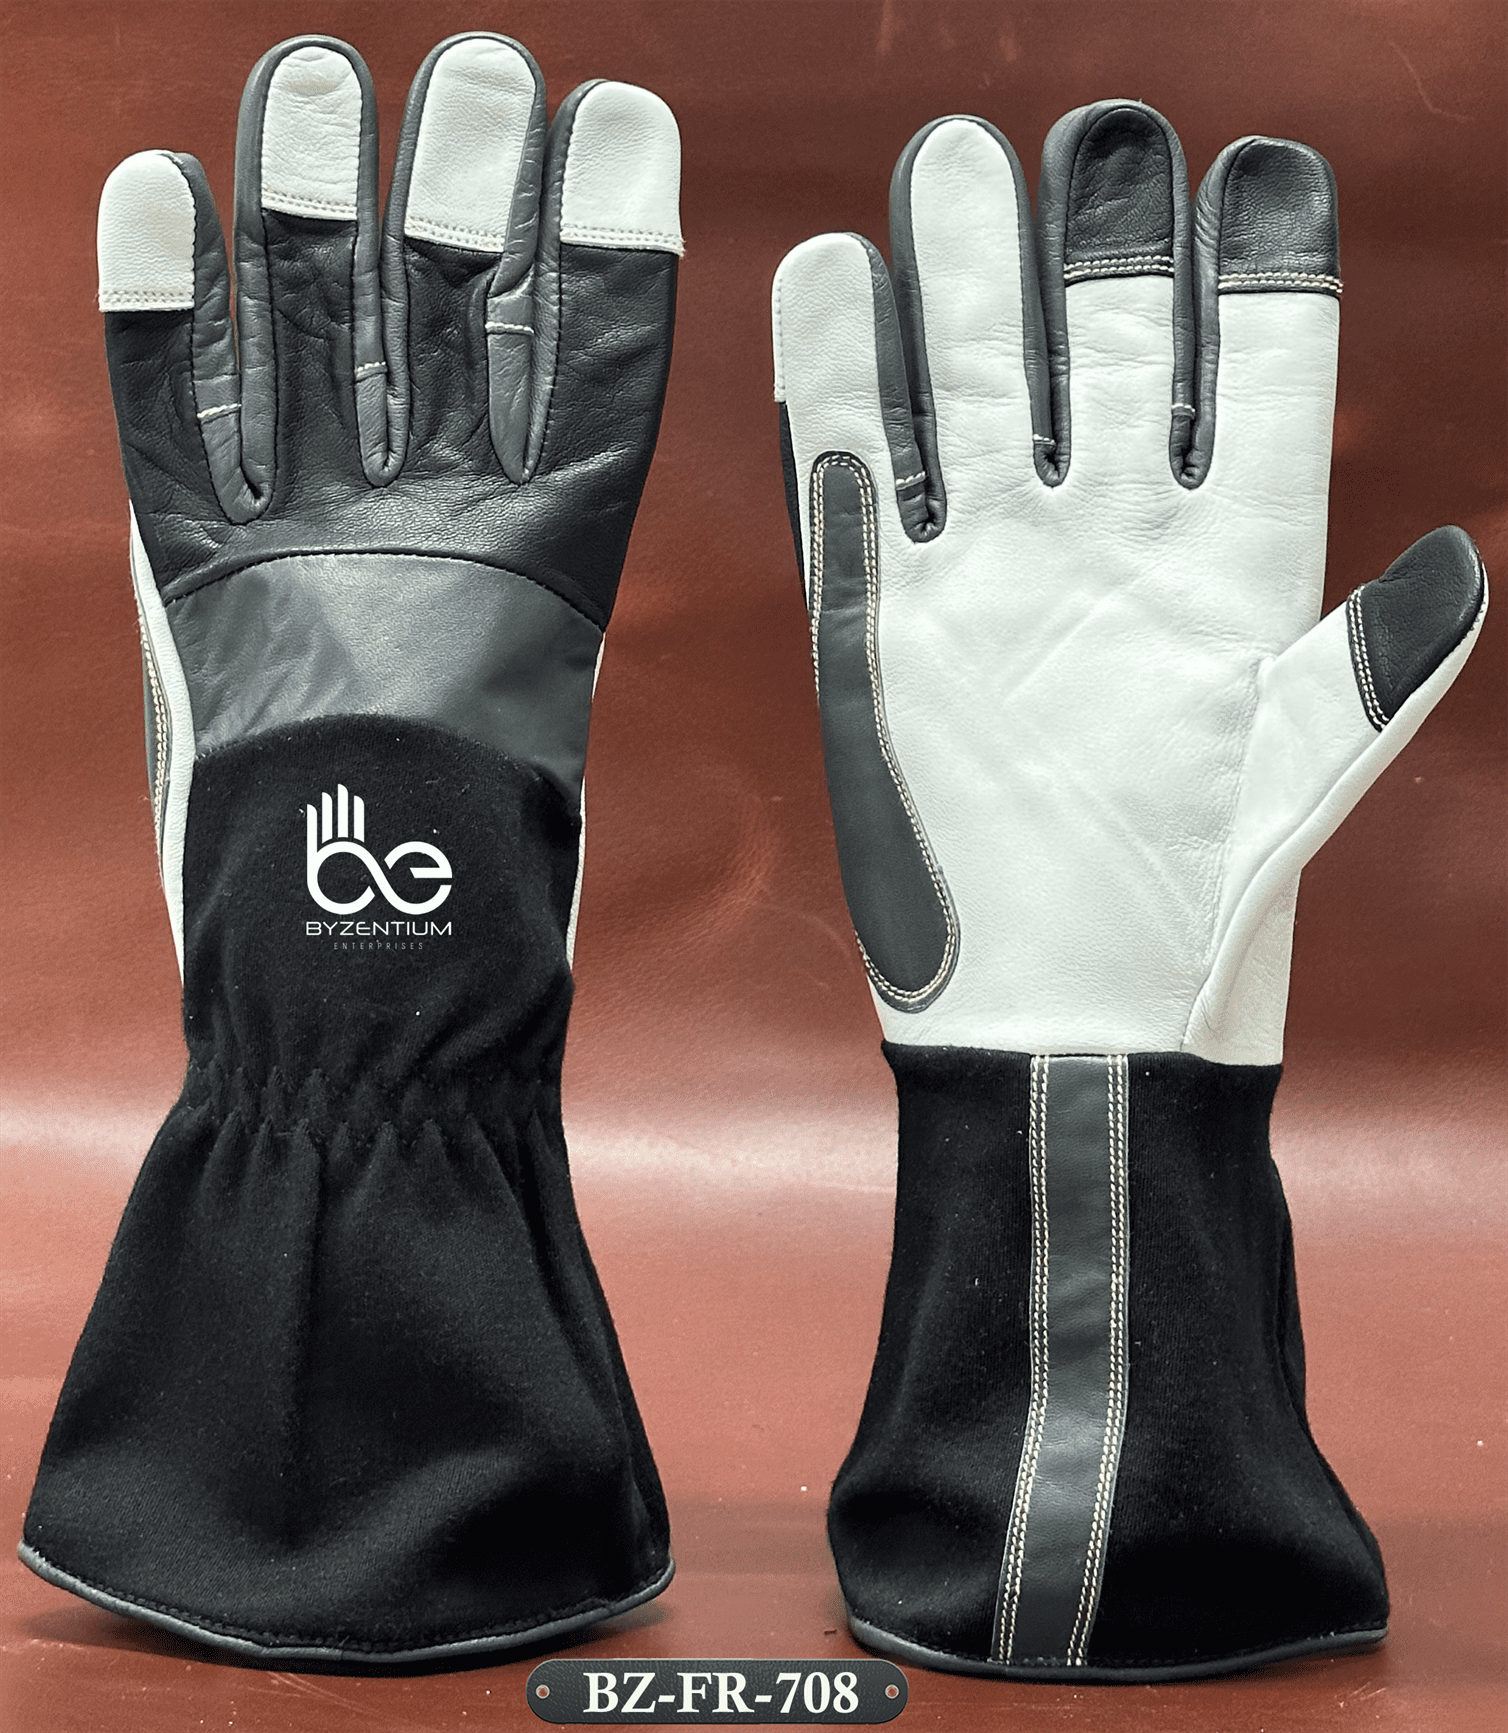 Fr gloves